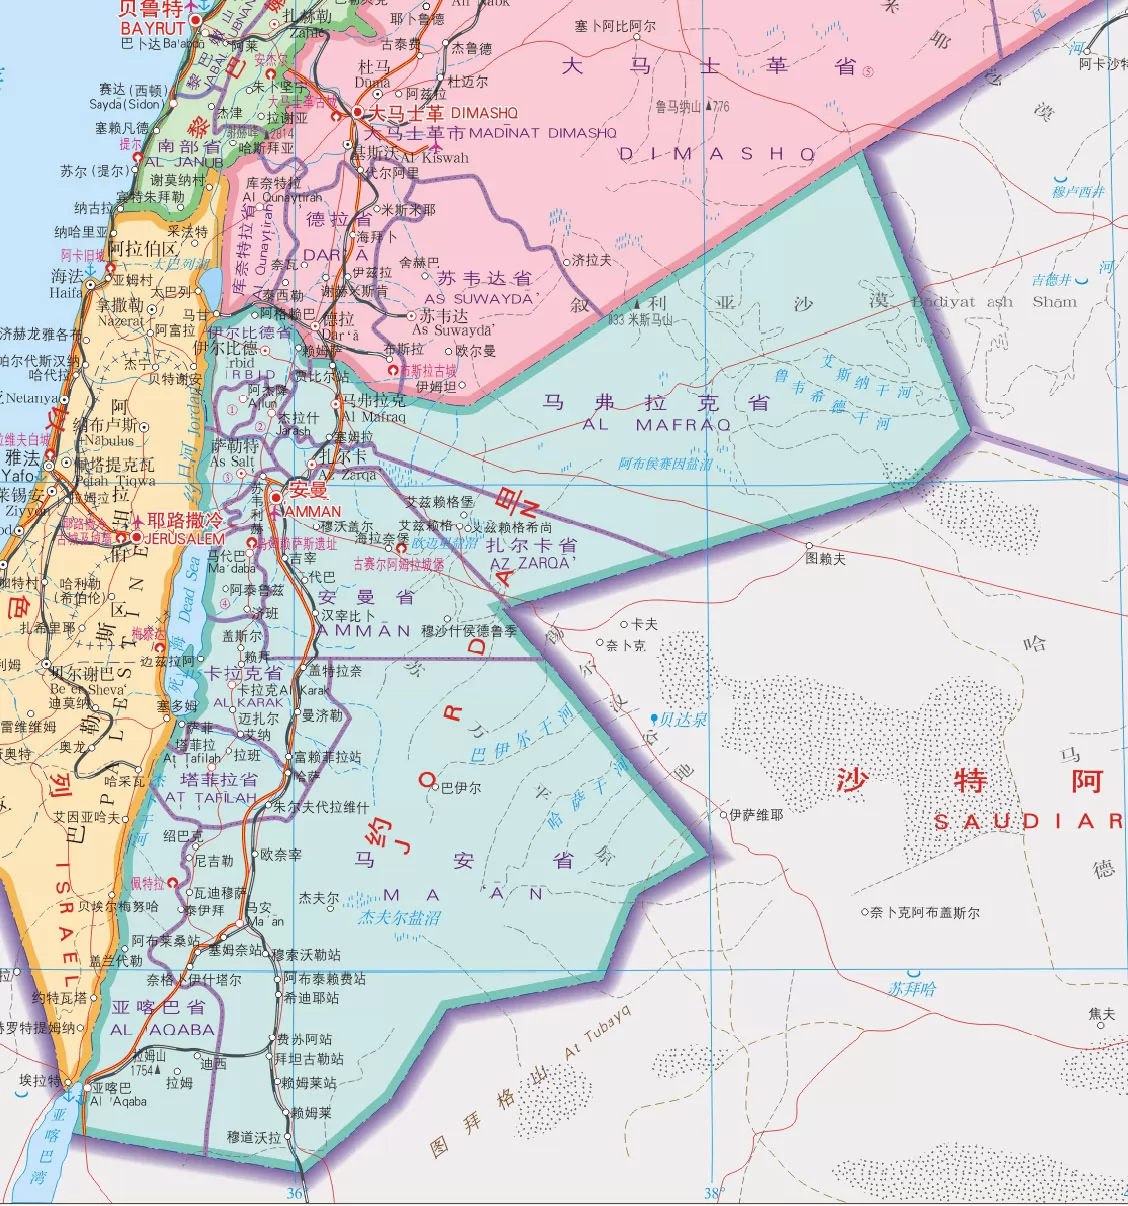 约旦地图,约旦地图中文版,约旦地图全图 - 世界